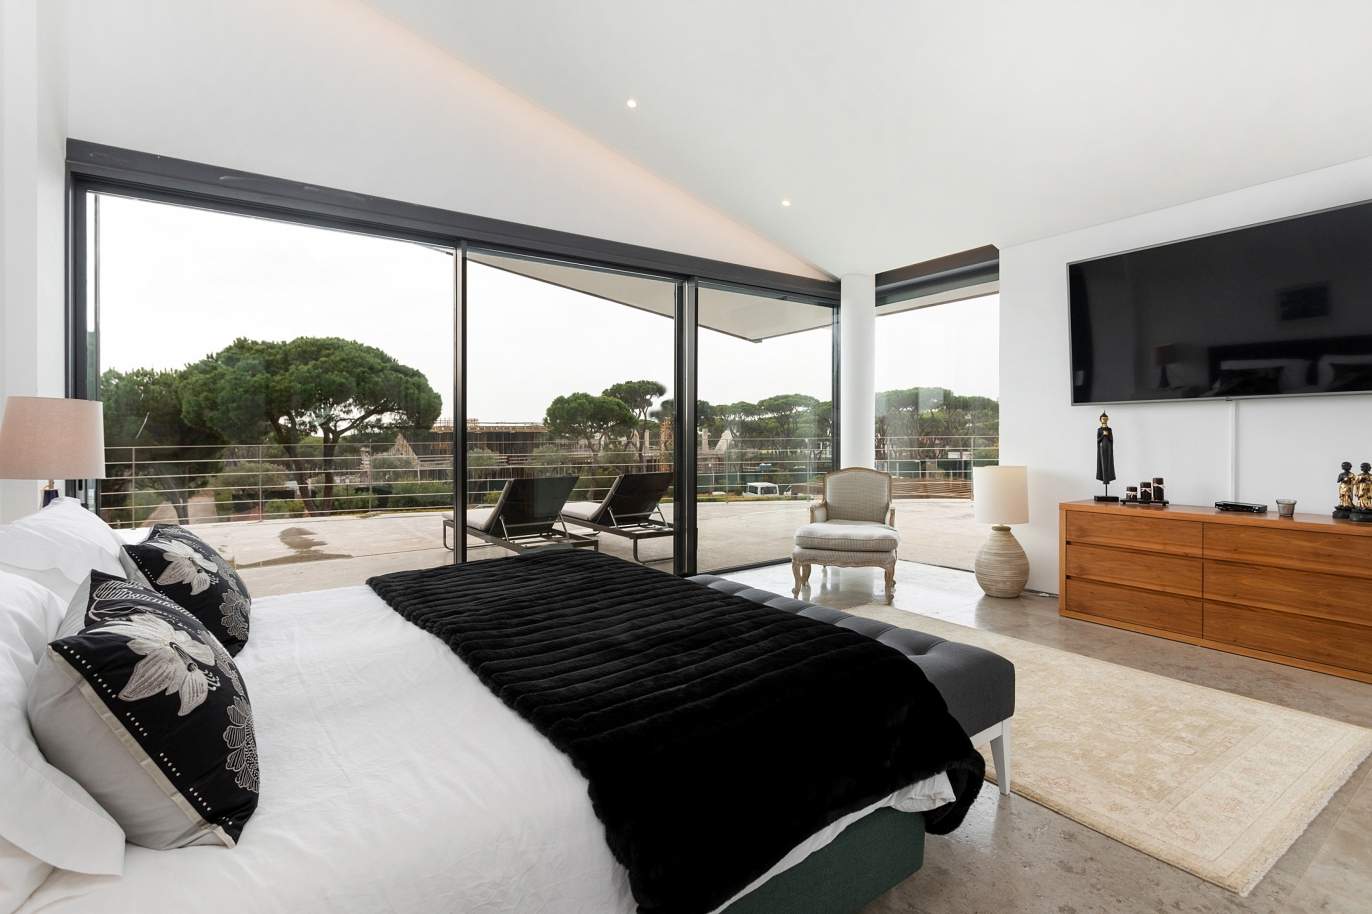 6 Bedroom Villa, with swimming pool, in Vilamoura, for sale - Algarve_188761